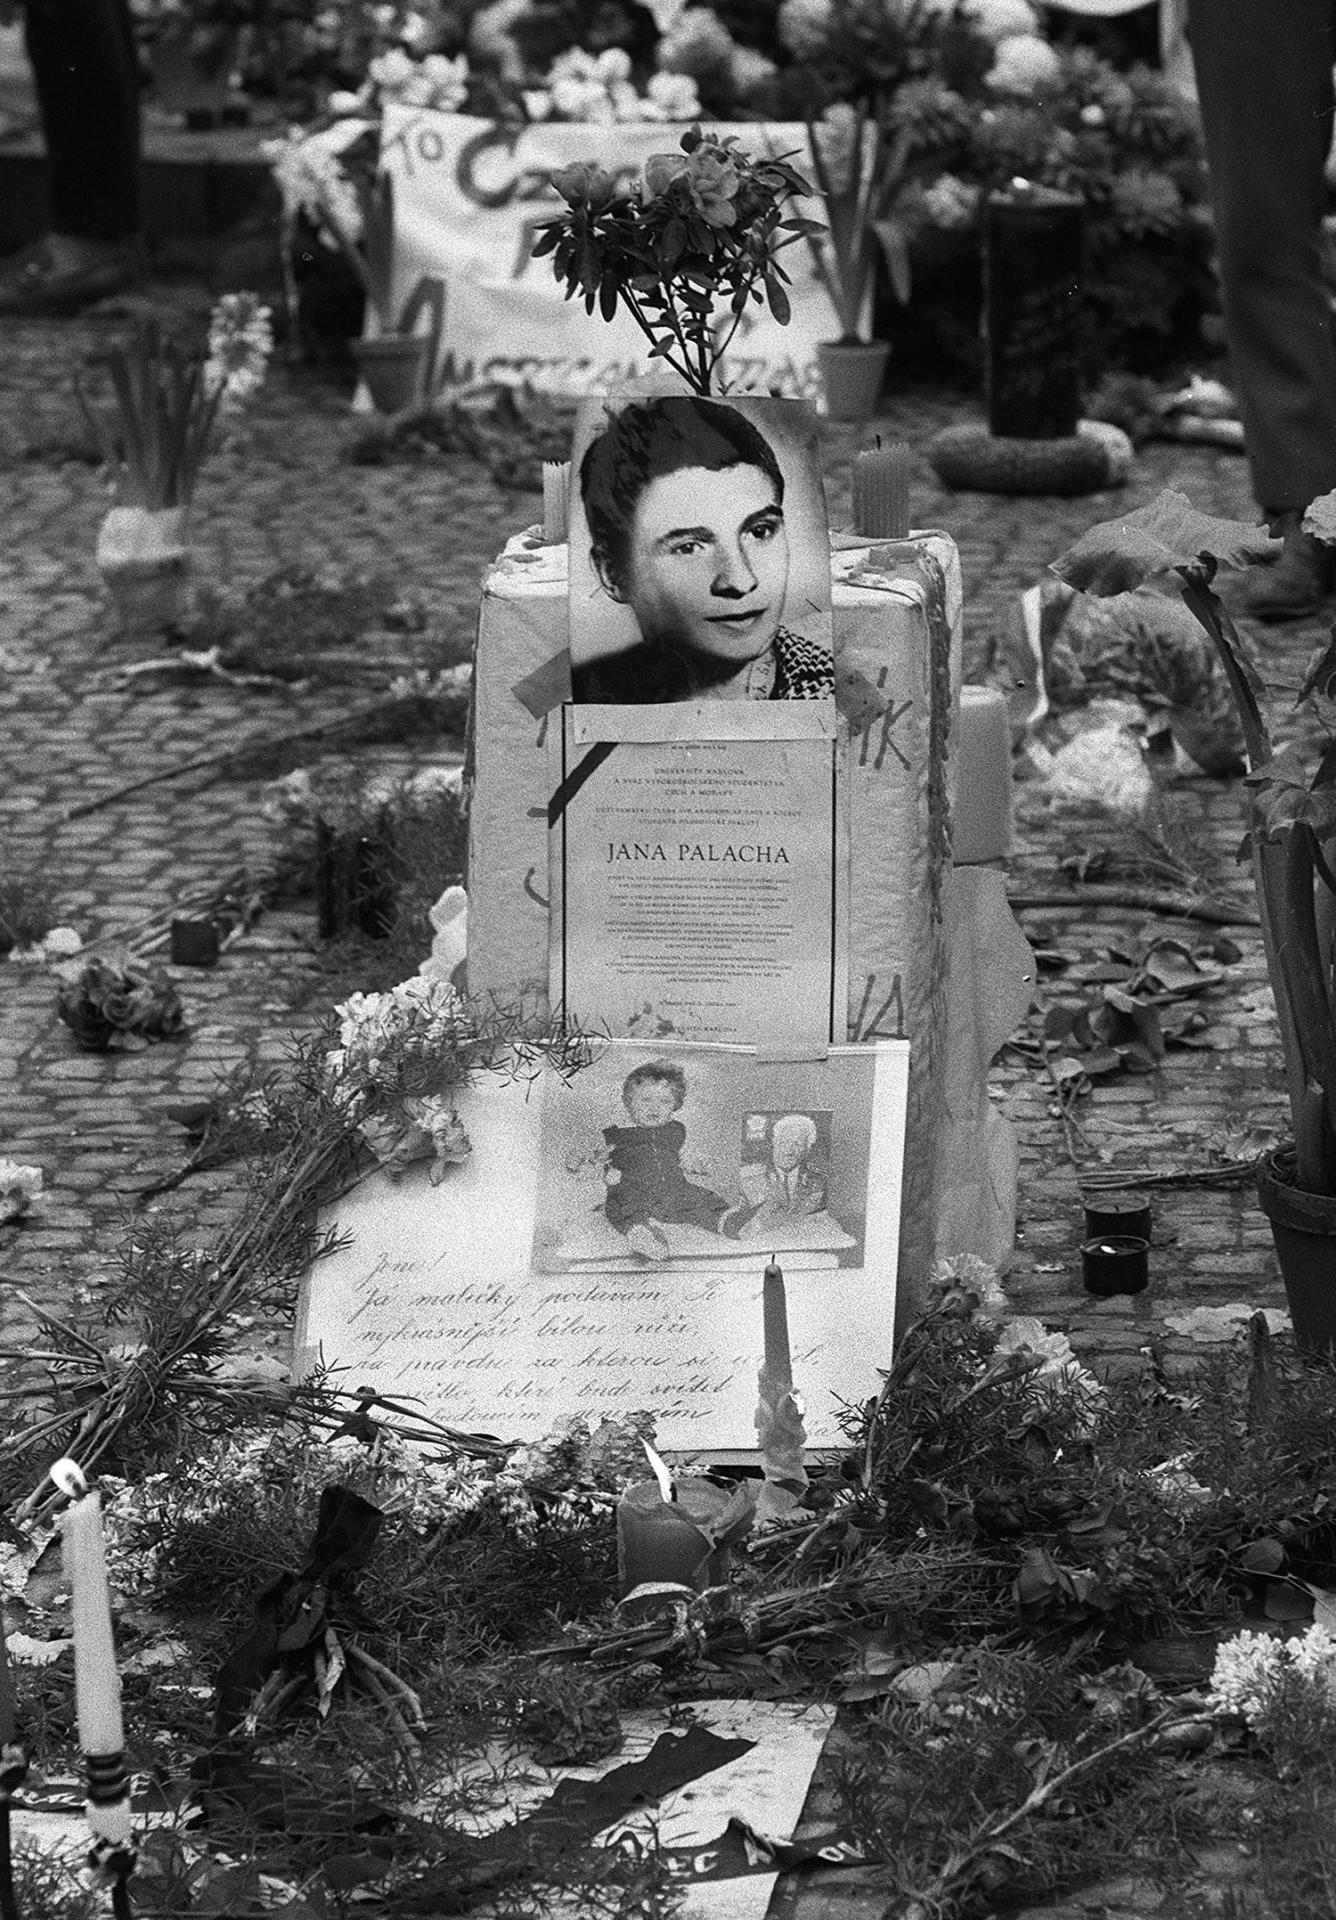 24. január 1969 Praha: Uctiť si pamiatku zosnulého študenta prichádzali krátko po oznámení jeho smrti tisíce ľudí. V dejinách Československa nemal dovtedy takýto čin obdobu. Po Palachovi sa pre podobnú akciu rozhodli ešte niekoľkí ďalší.